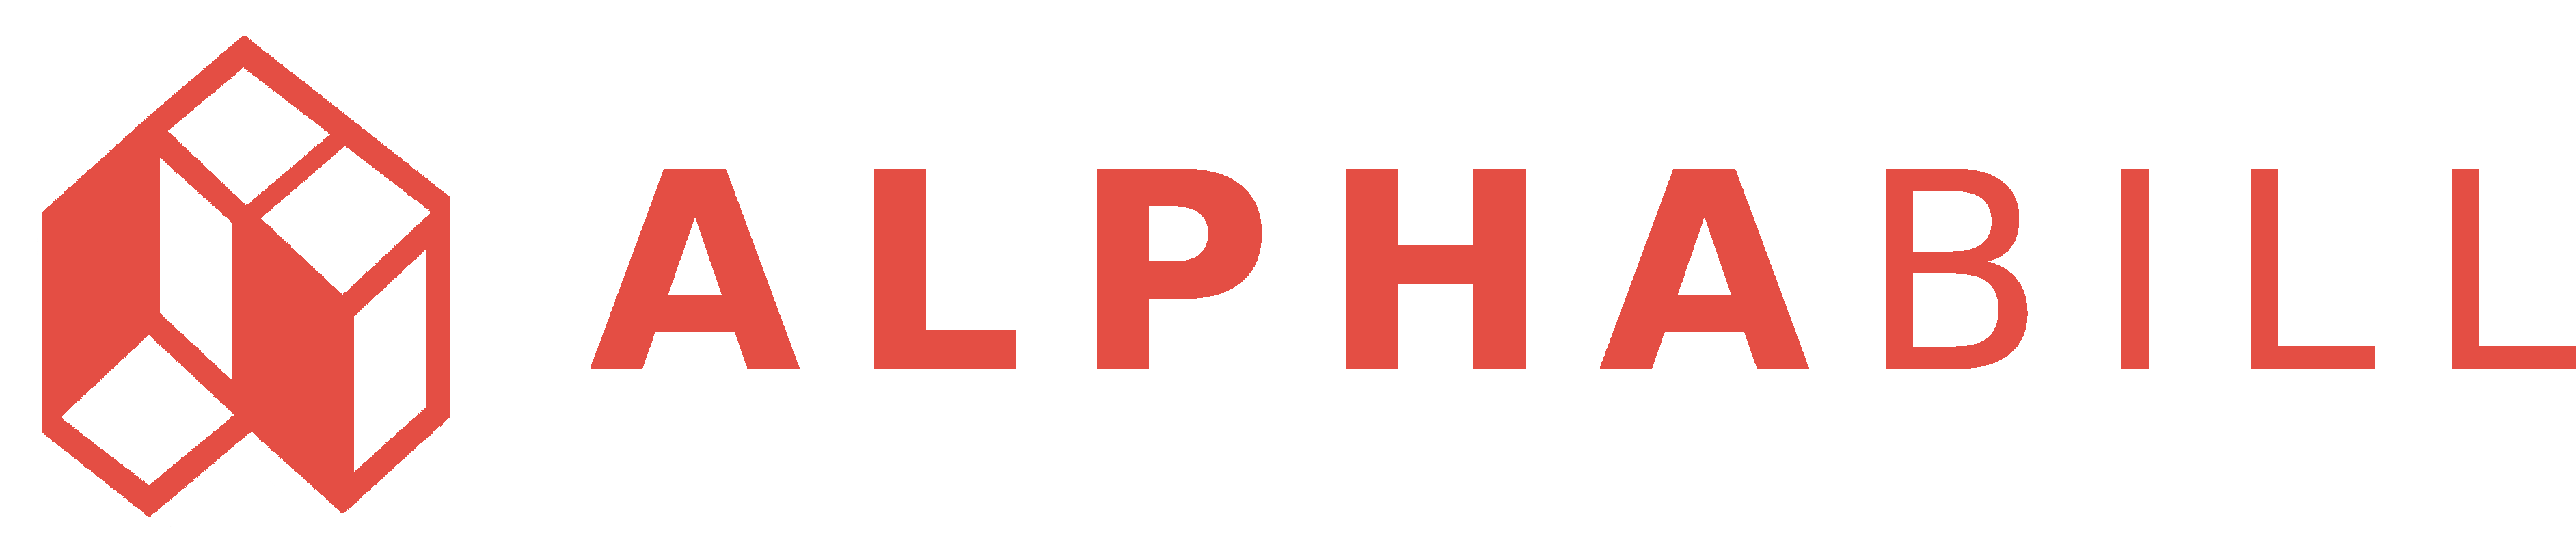 alphabill logo - alphabill.at Online Rechnungsprogramm